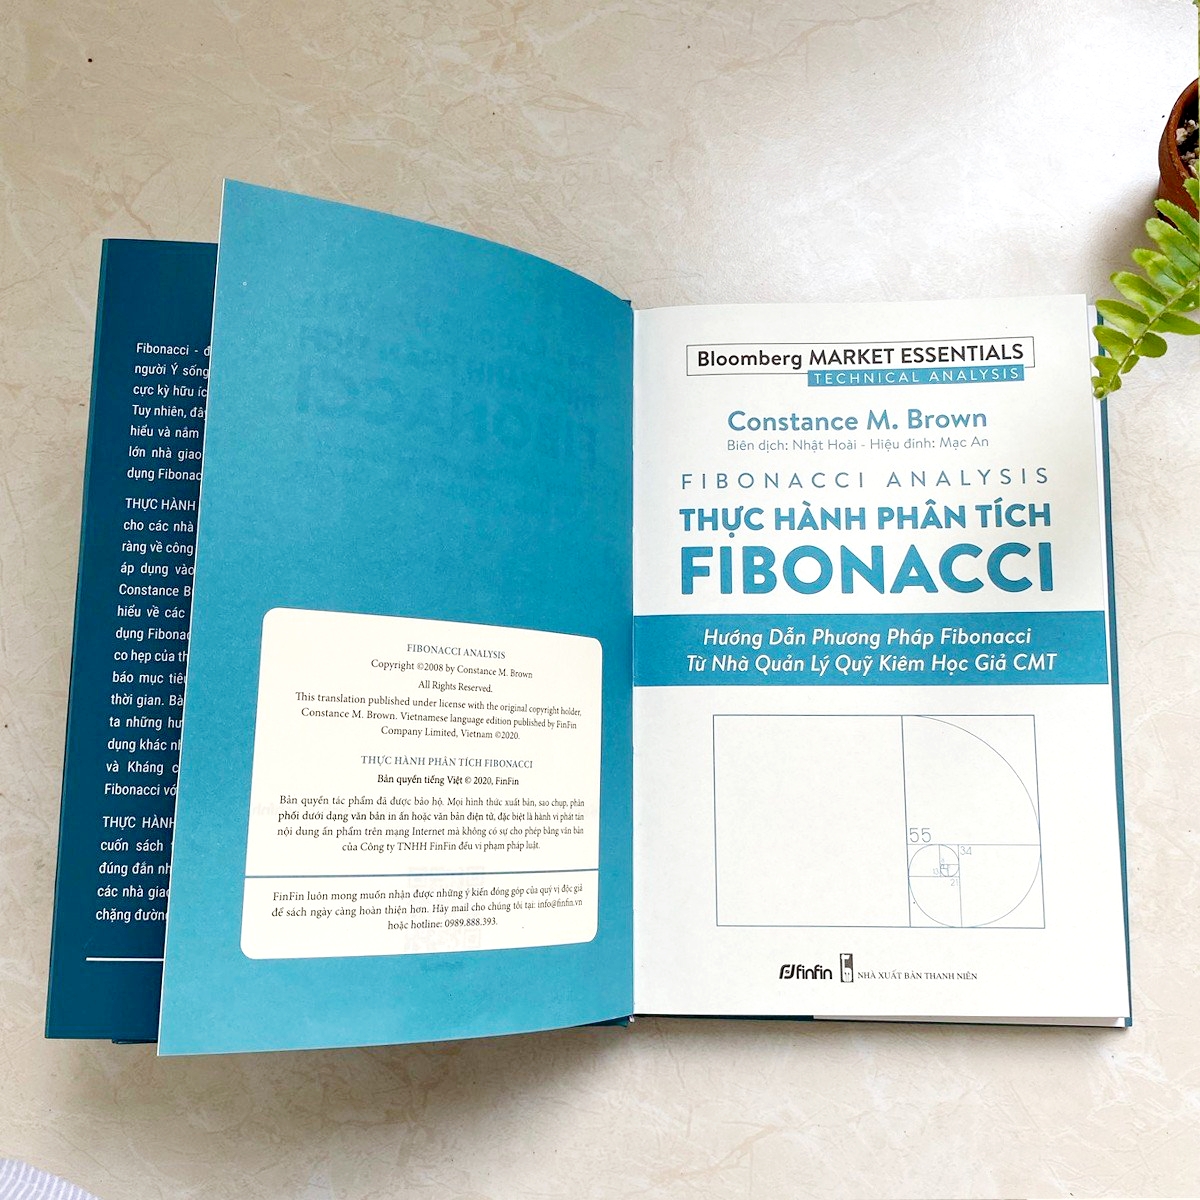 Thực hành Phân tích Fibonacci - Hướng dẫn Phương pháp Fibonacci từ Nhà Quản Lý Quỹ kiêm Học giả CMT